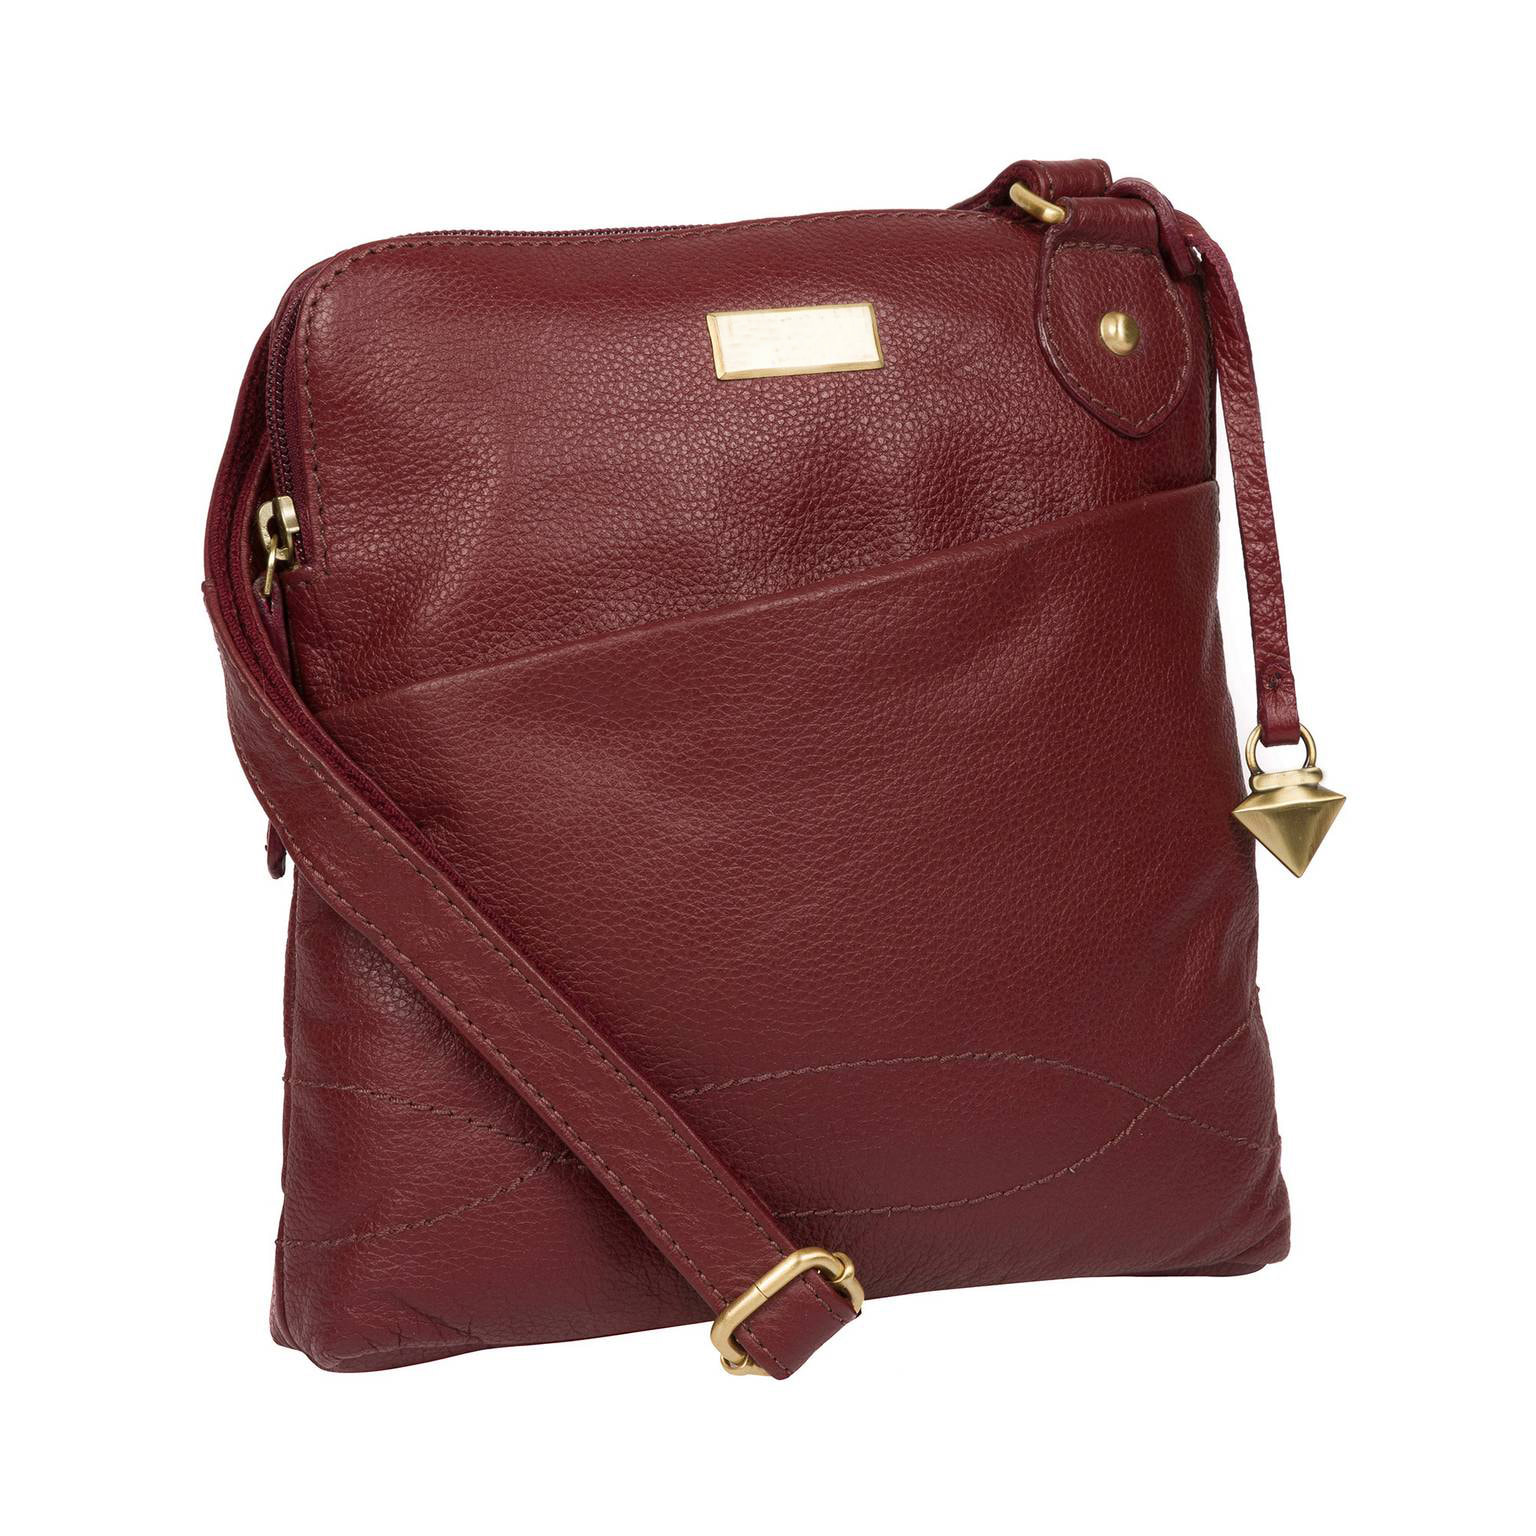 Dark Red Leather Shoulder Bag, Cross Body Bag